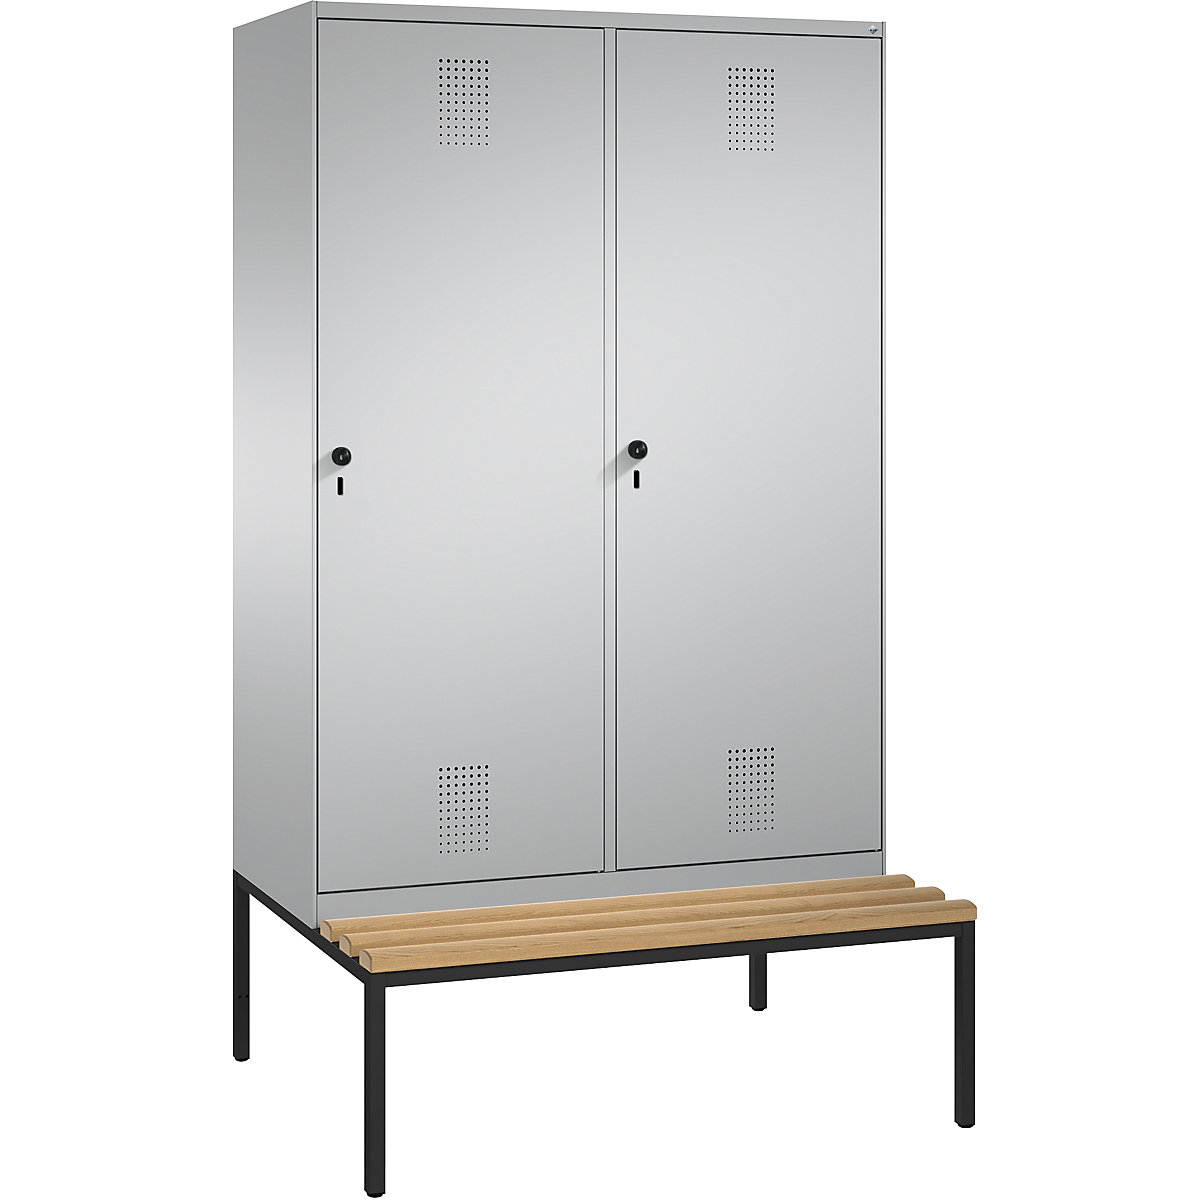 Šatní skříň s lavicí EVOLO s dveřmi přes 2 oddíly – C+P, 4 oddíly, 2 dveře, šířka oddílu 300 mm, bílý hliník / bílý hliník-8